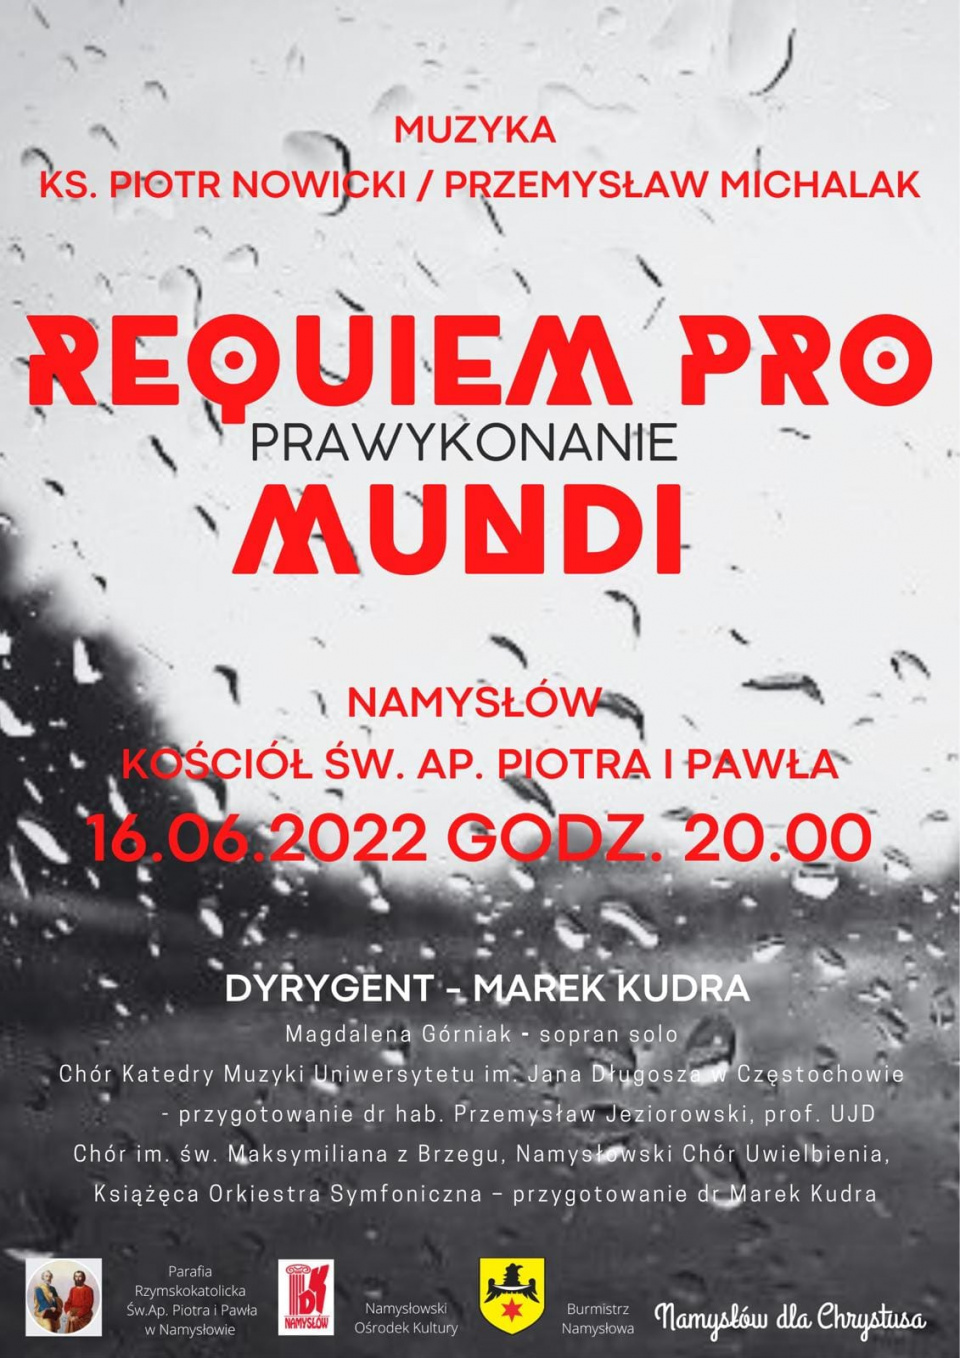 Prawykonanie "Requiem pro Mundi" - platak wydarzenia